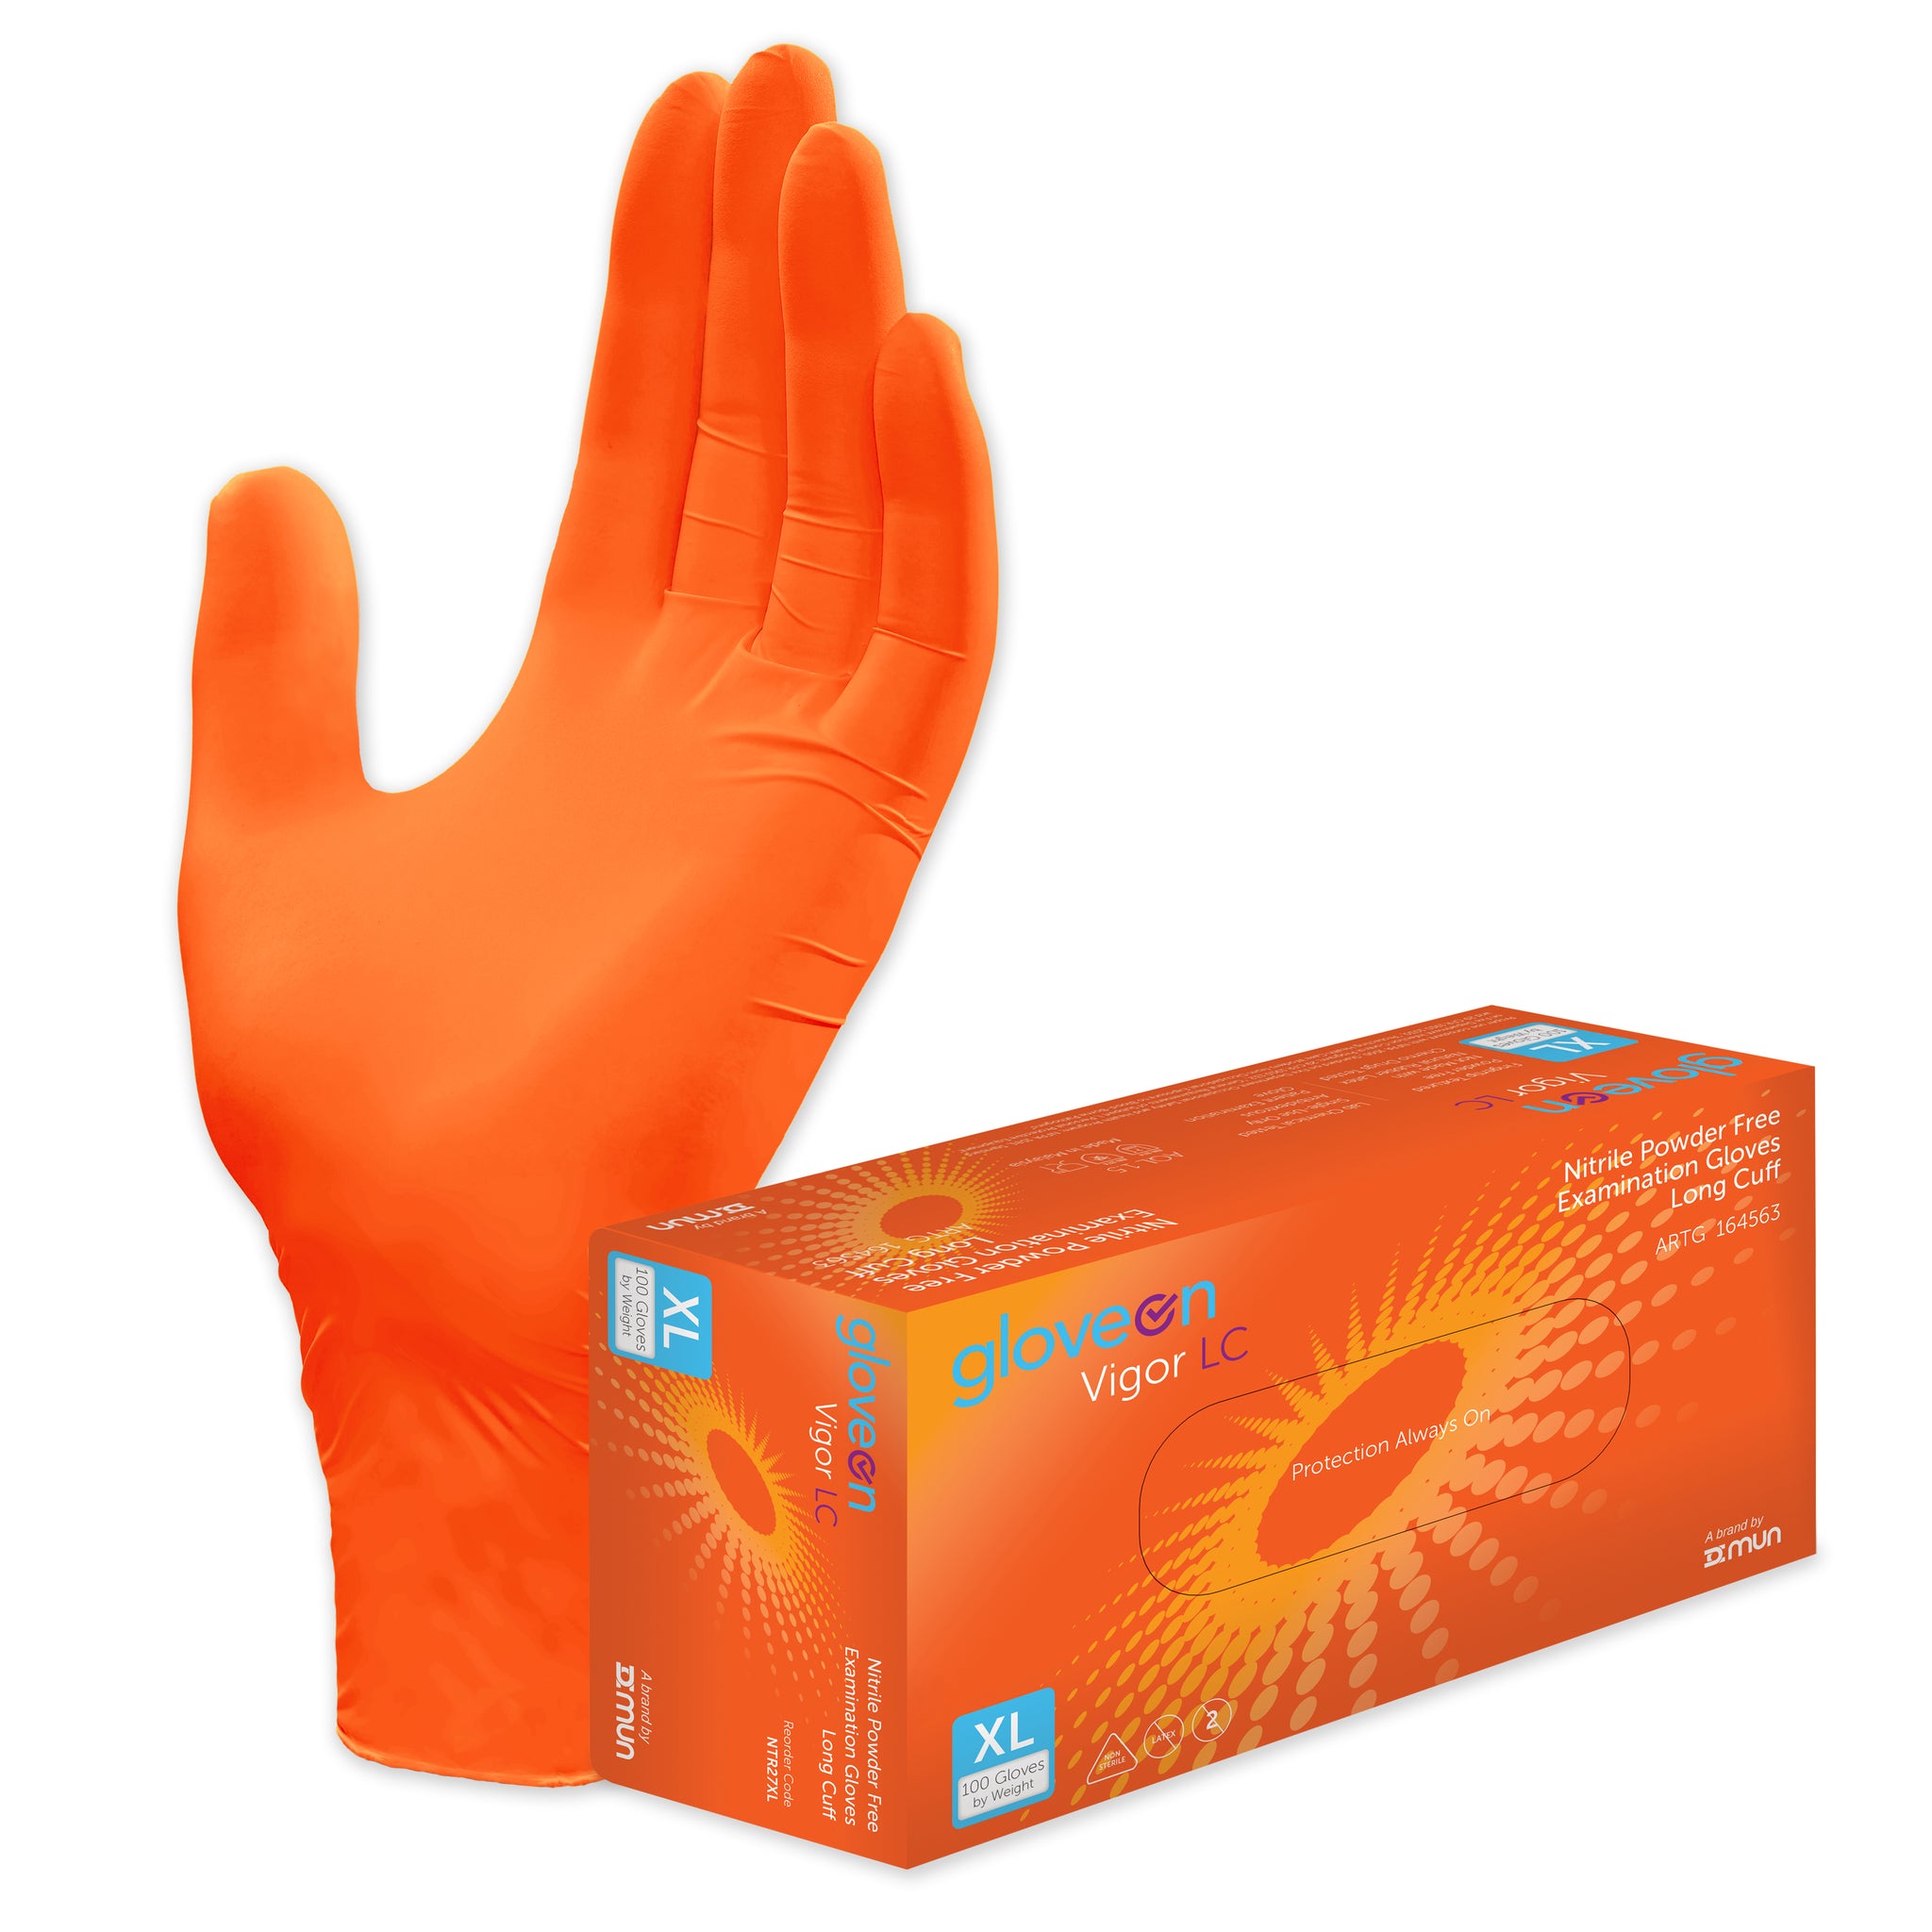 Nitrile Examination Glove Small Non Sterile Long Cuff - Box of 100, XL